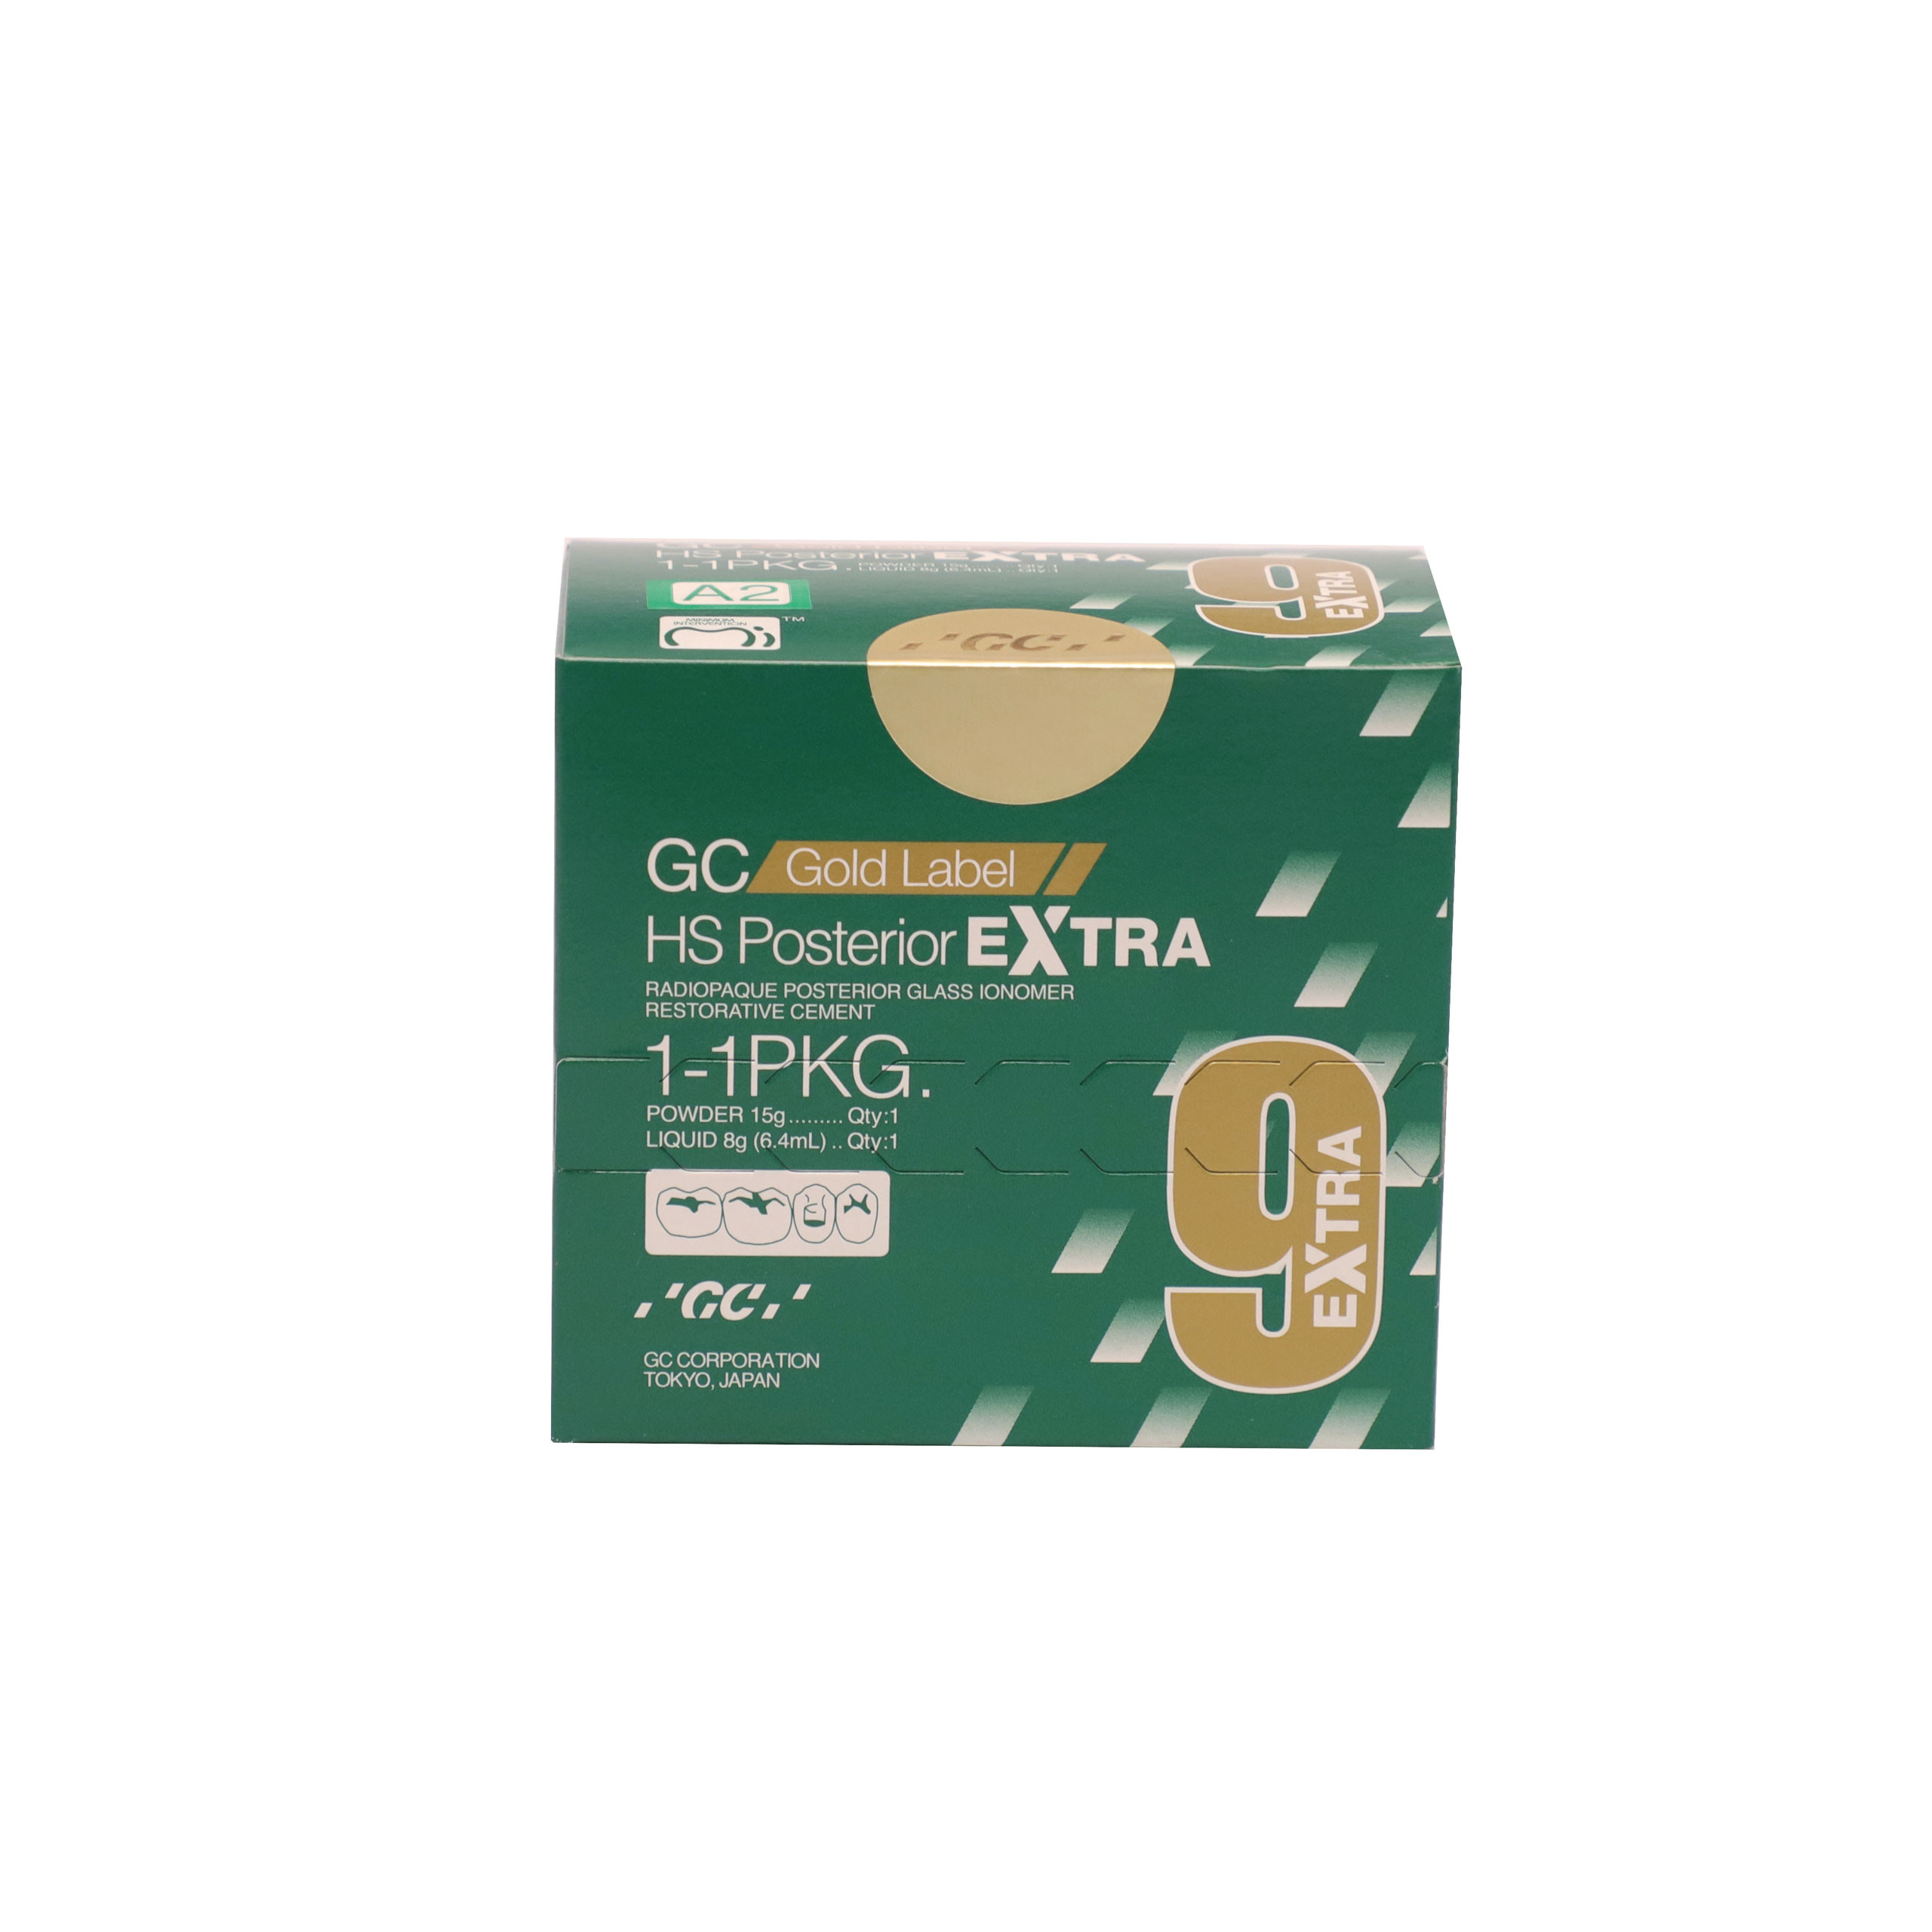 GC Gold Label HS Posterior Extra Powder 15gm Liquid 6.4ml